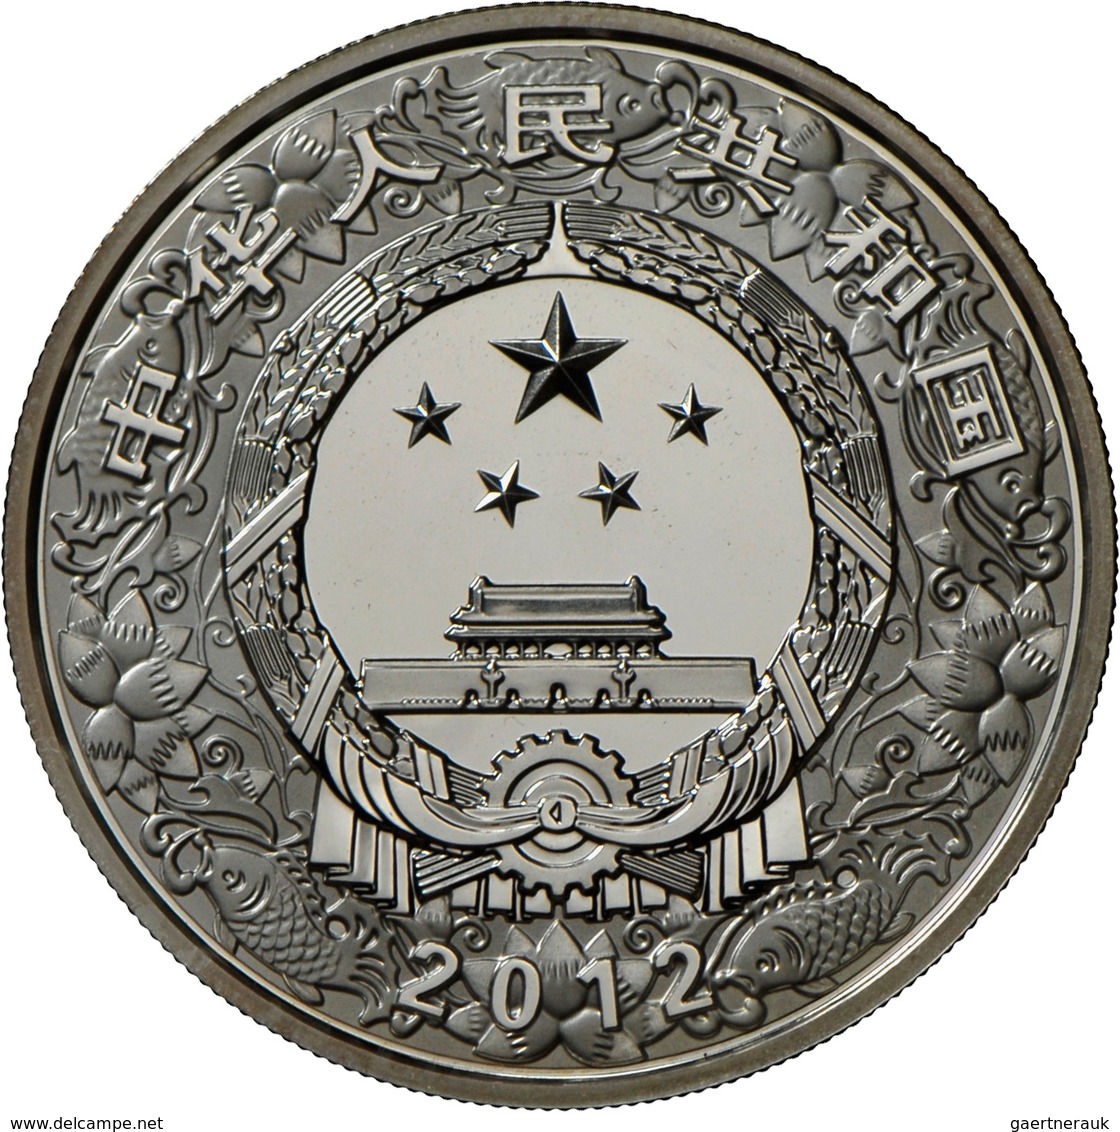 China - Volksrepublik: Lot 2 Silbermünzen: 10 Yuan 2012 Jahr Des Drachen Farbmünze, 1 OZ 999/1000 Si - Cina